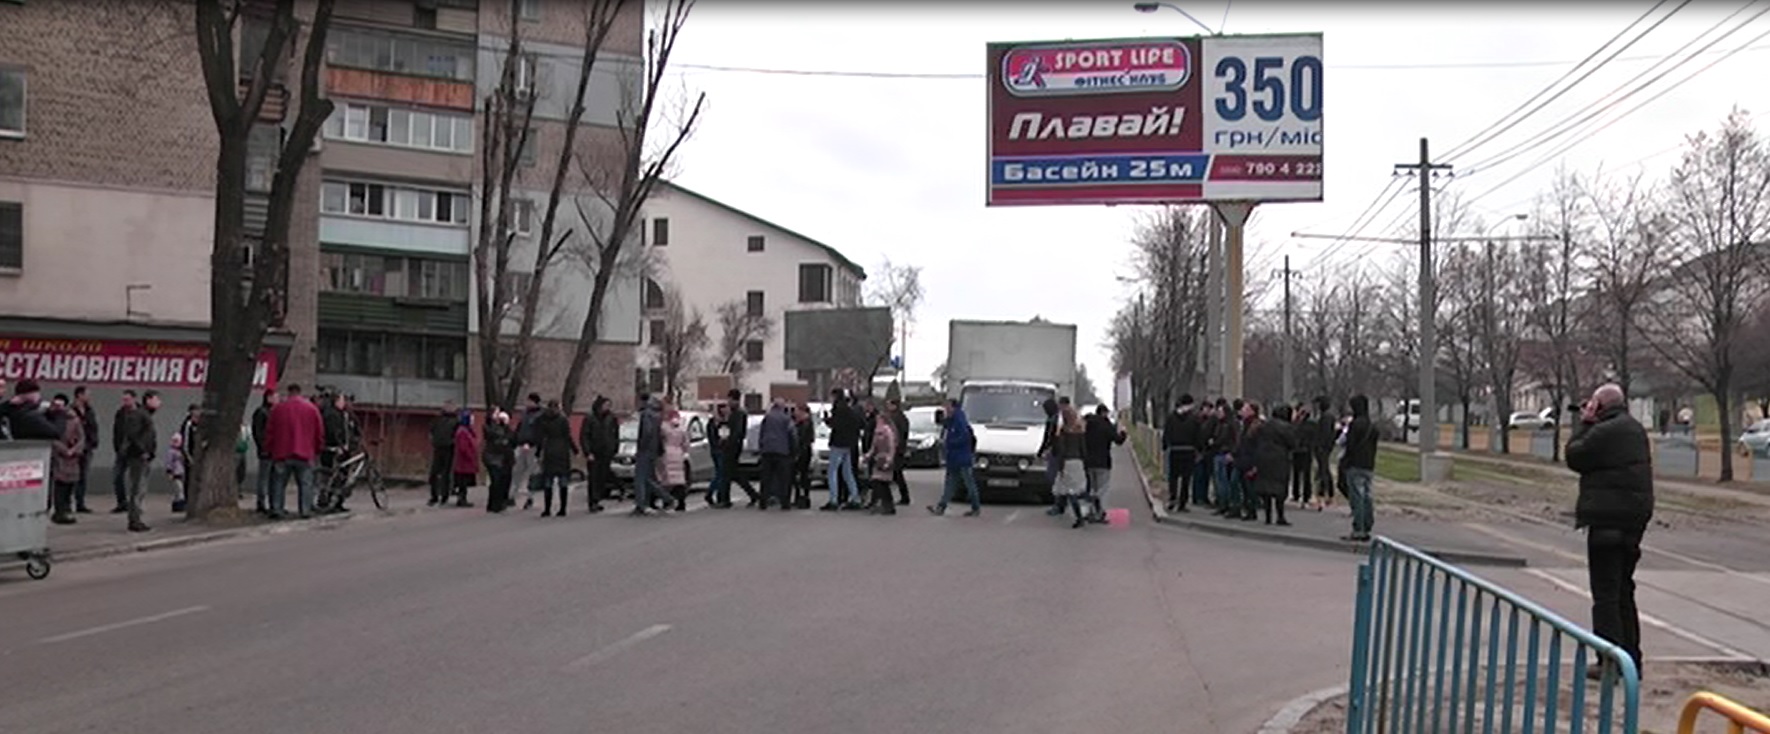 У Дніпропетровську громадськість вимагає покарати винного у ДТП